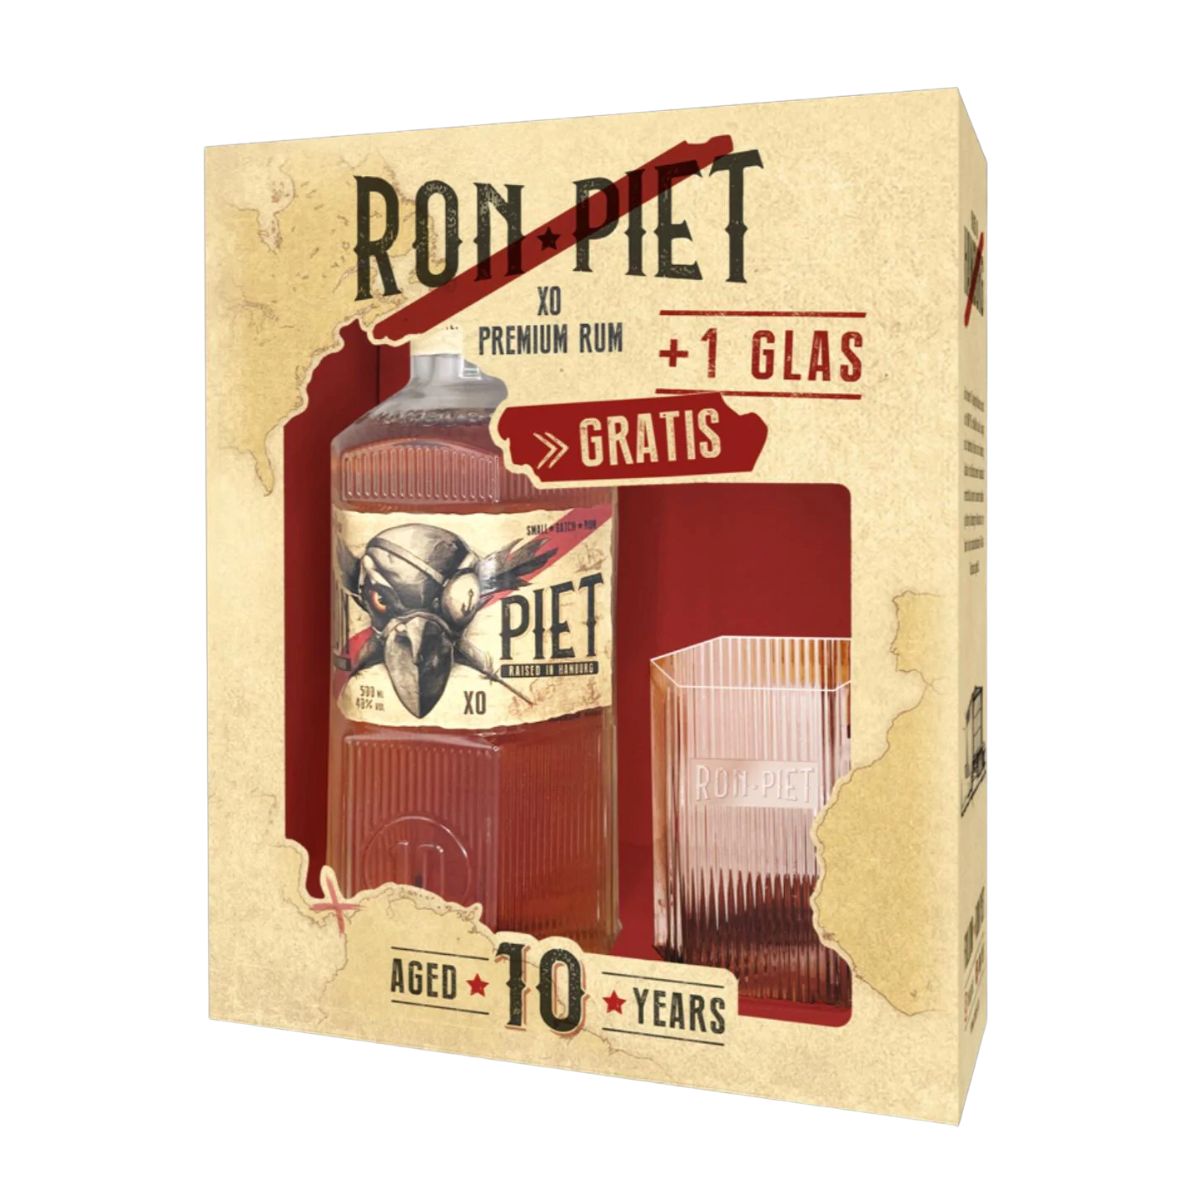 Ron Piet XO Premium Rom + gratis glas